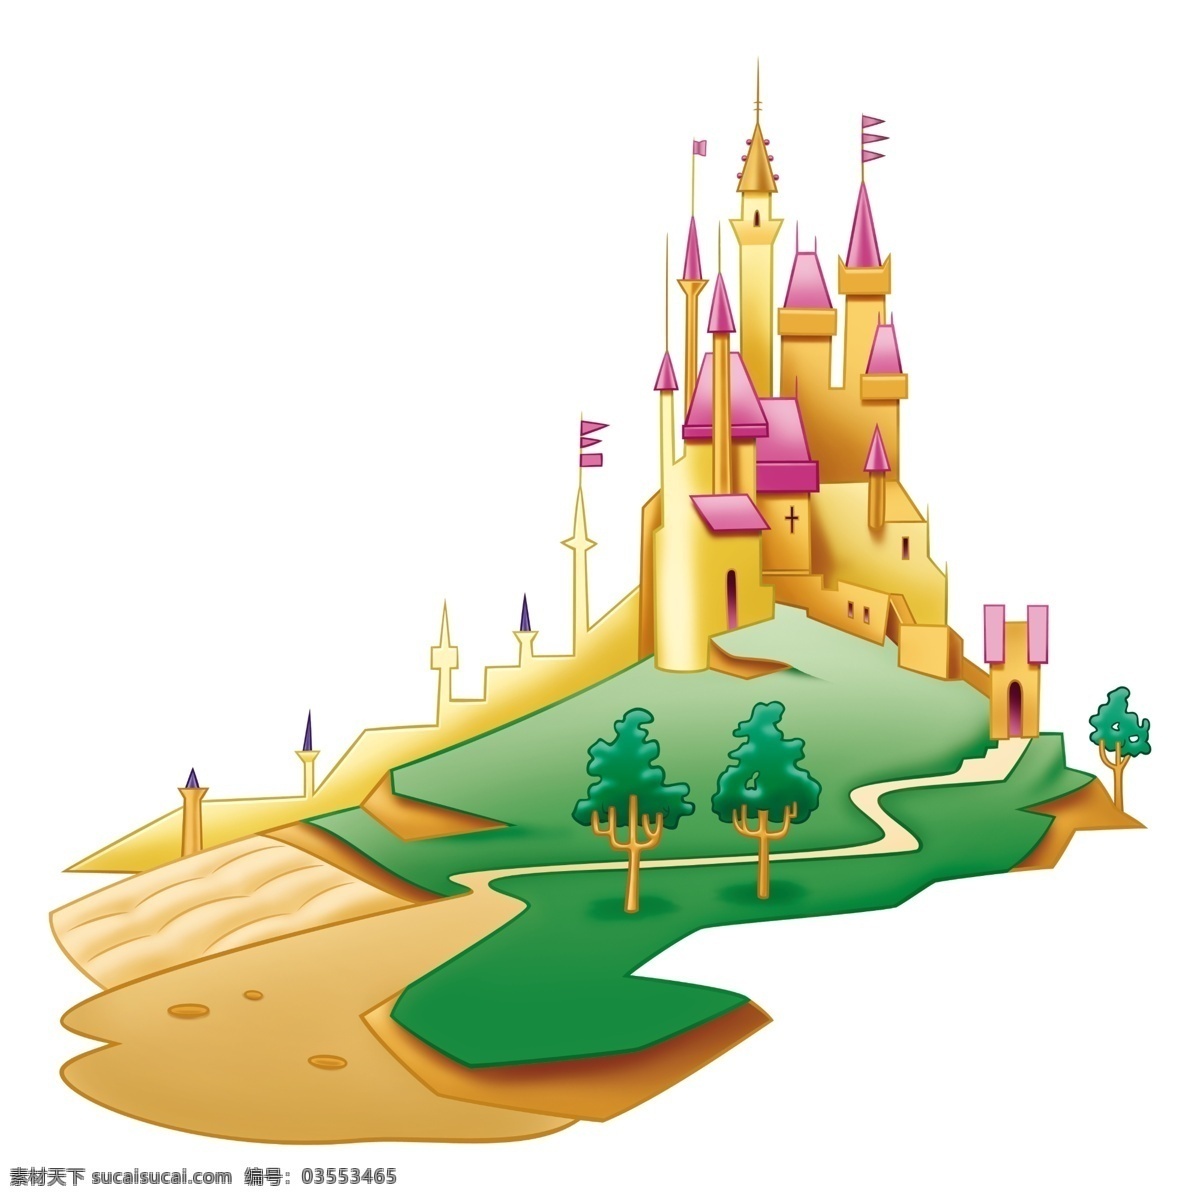 迪士尼 公主 城堡 卡通 梦幻 psd源文件